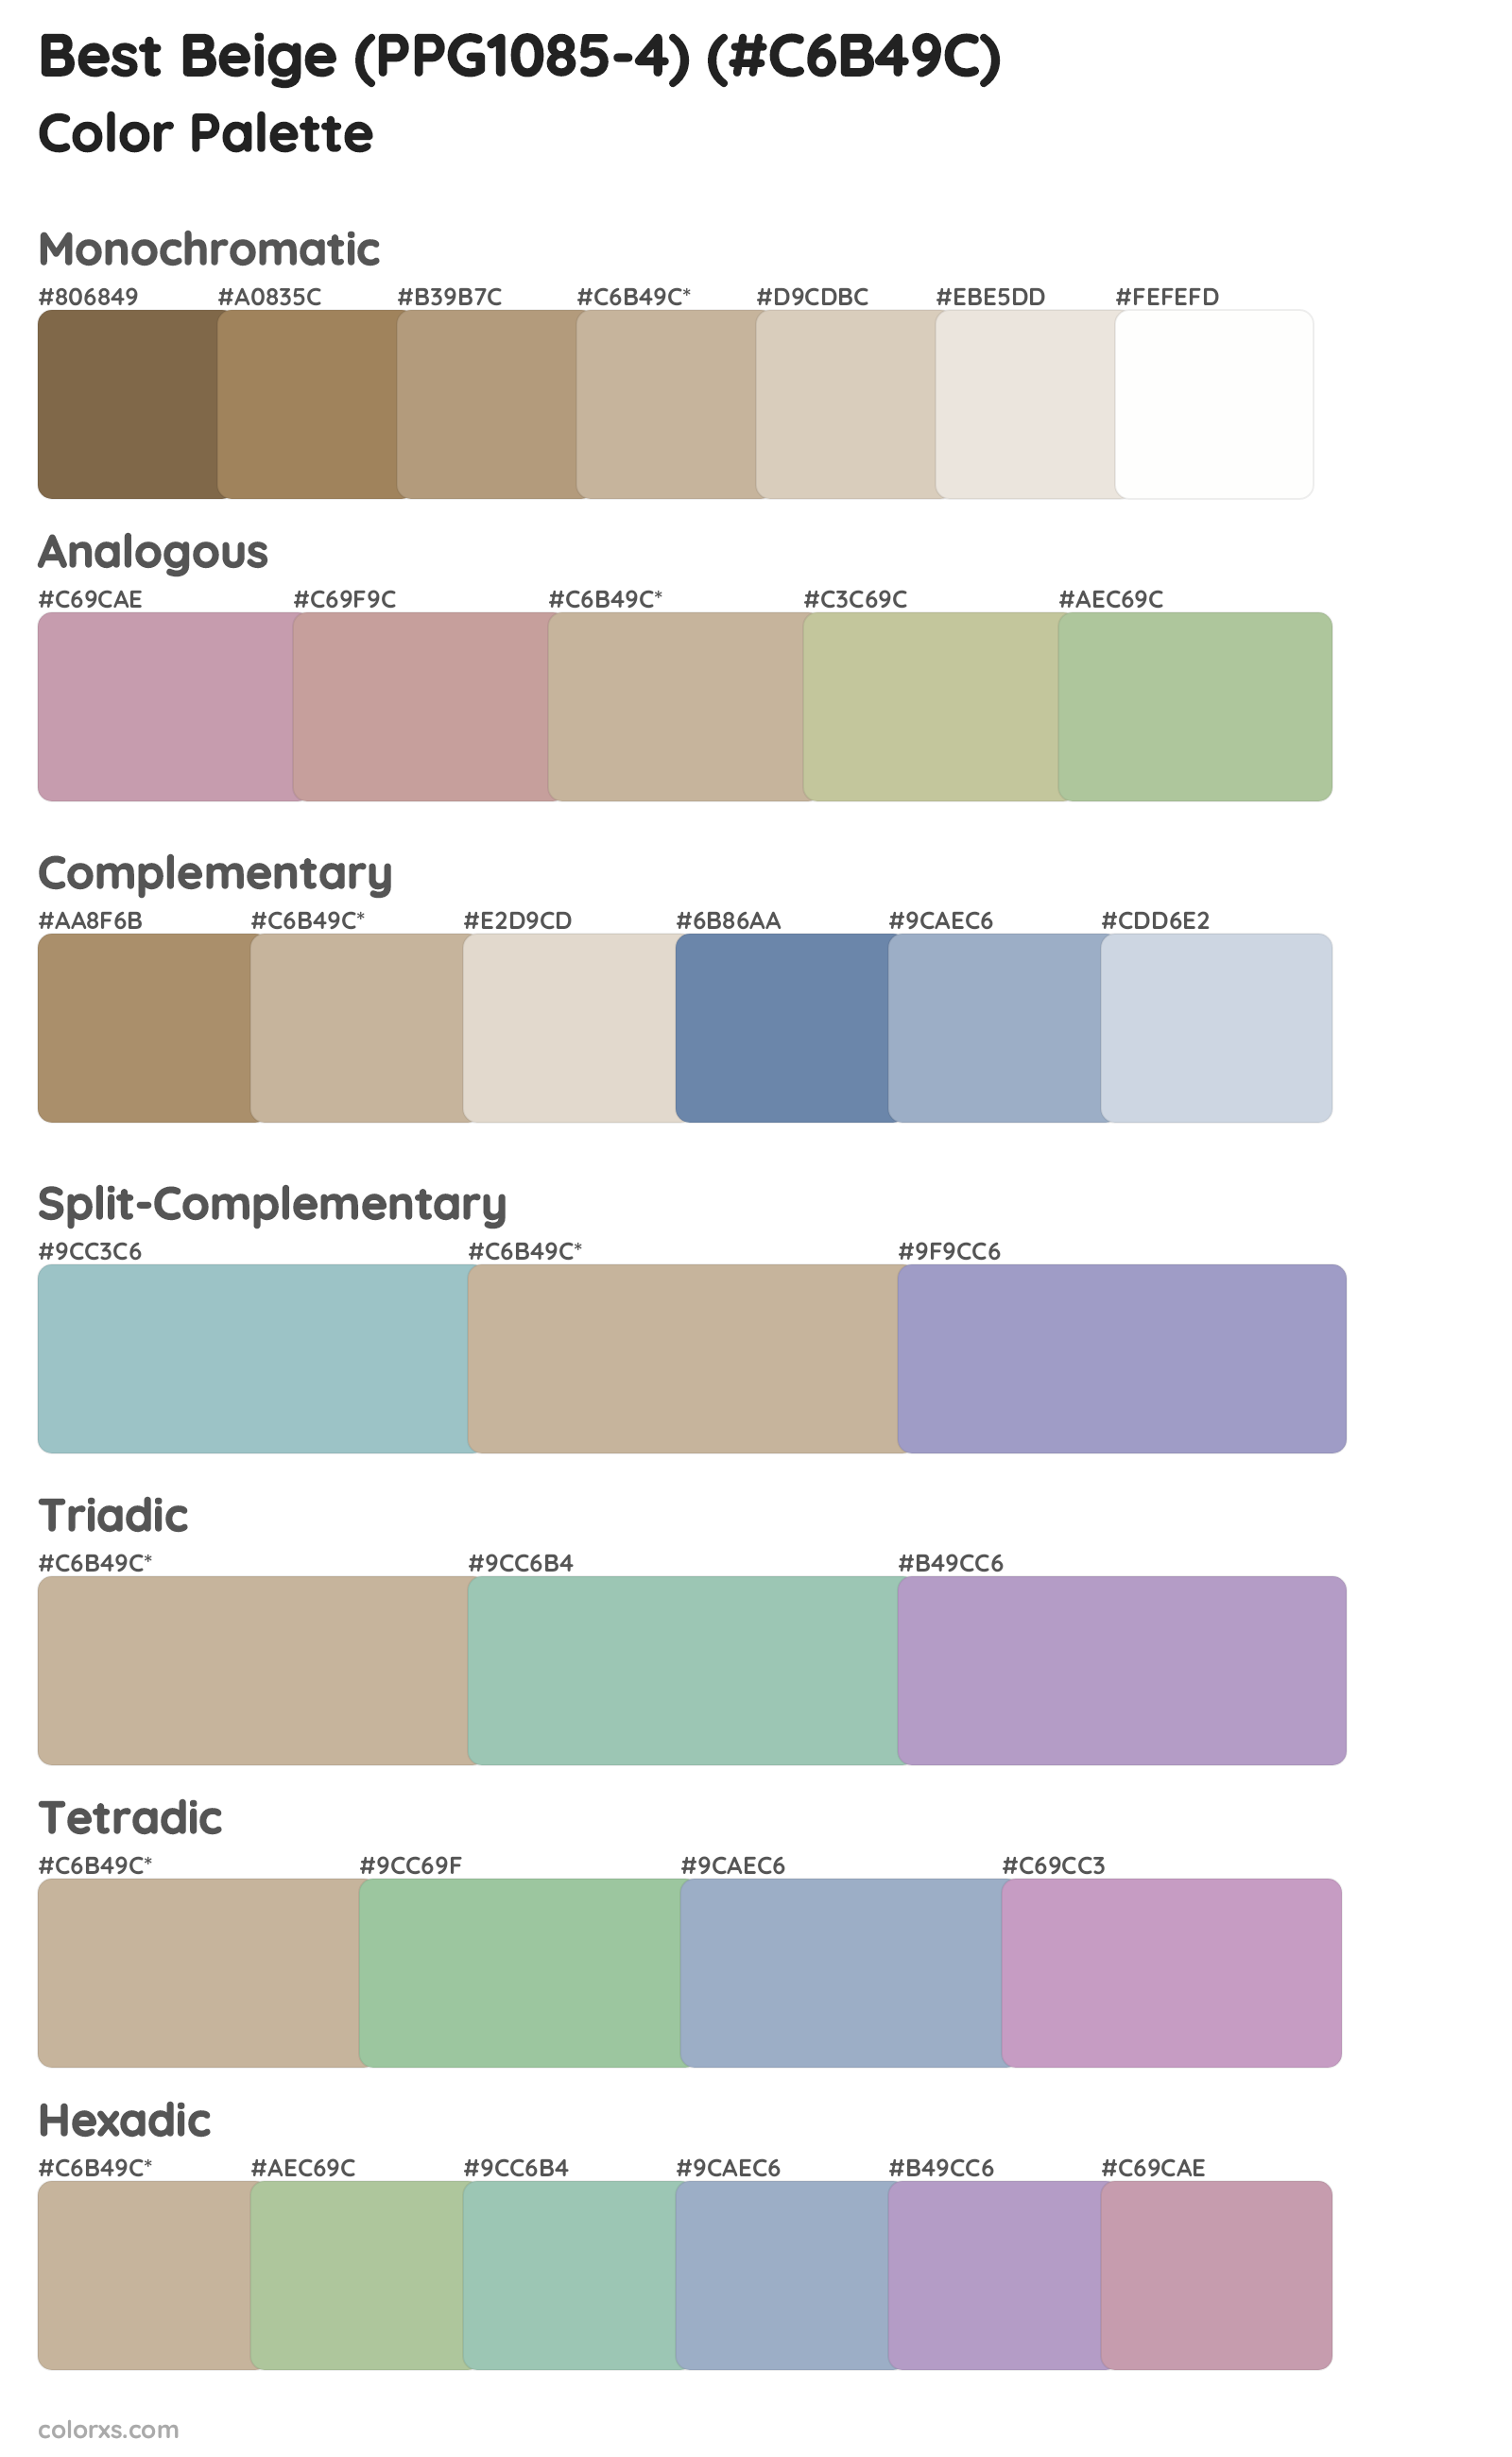 Best Beige (PPG1085-4) Color Scheme Palettes